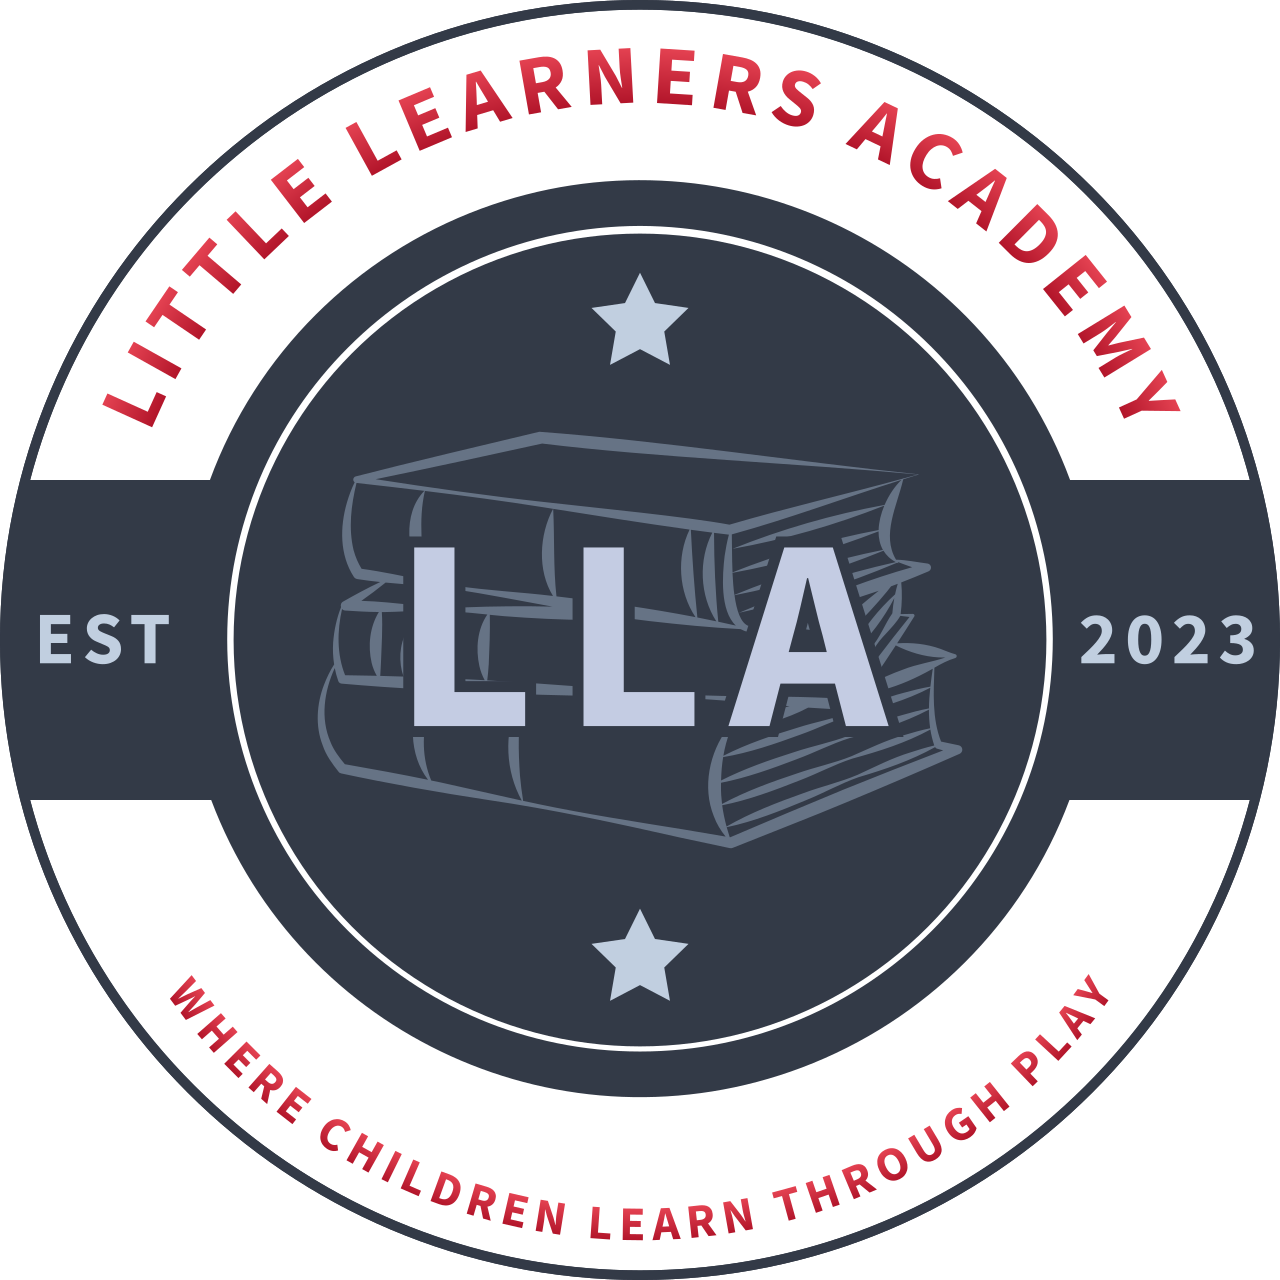 LITTLE LEARNERS ACADEMY's logo